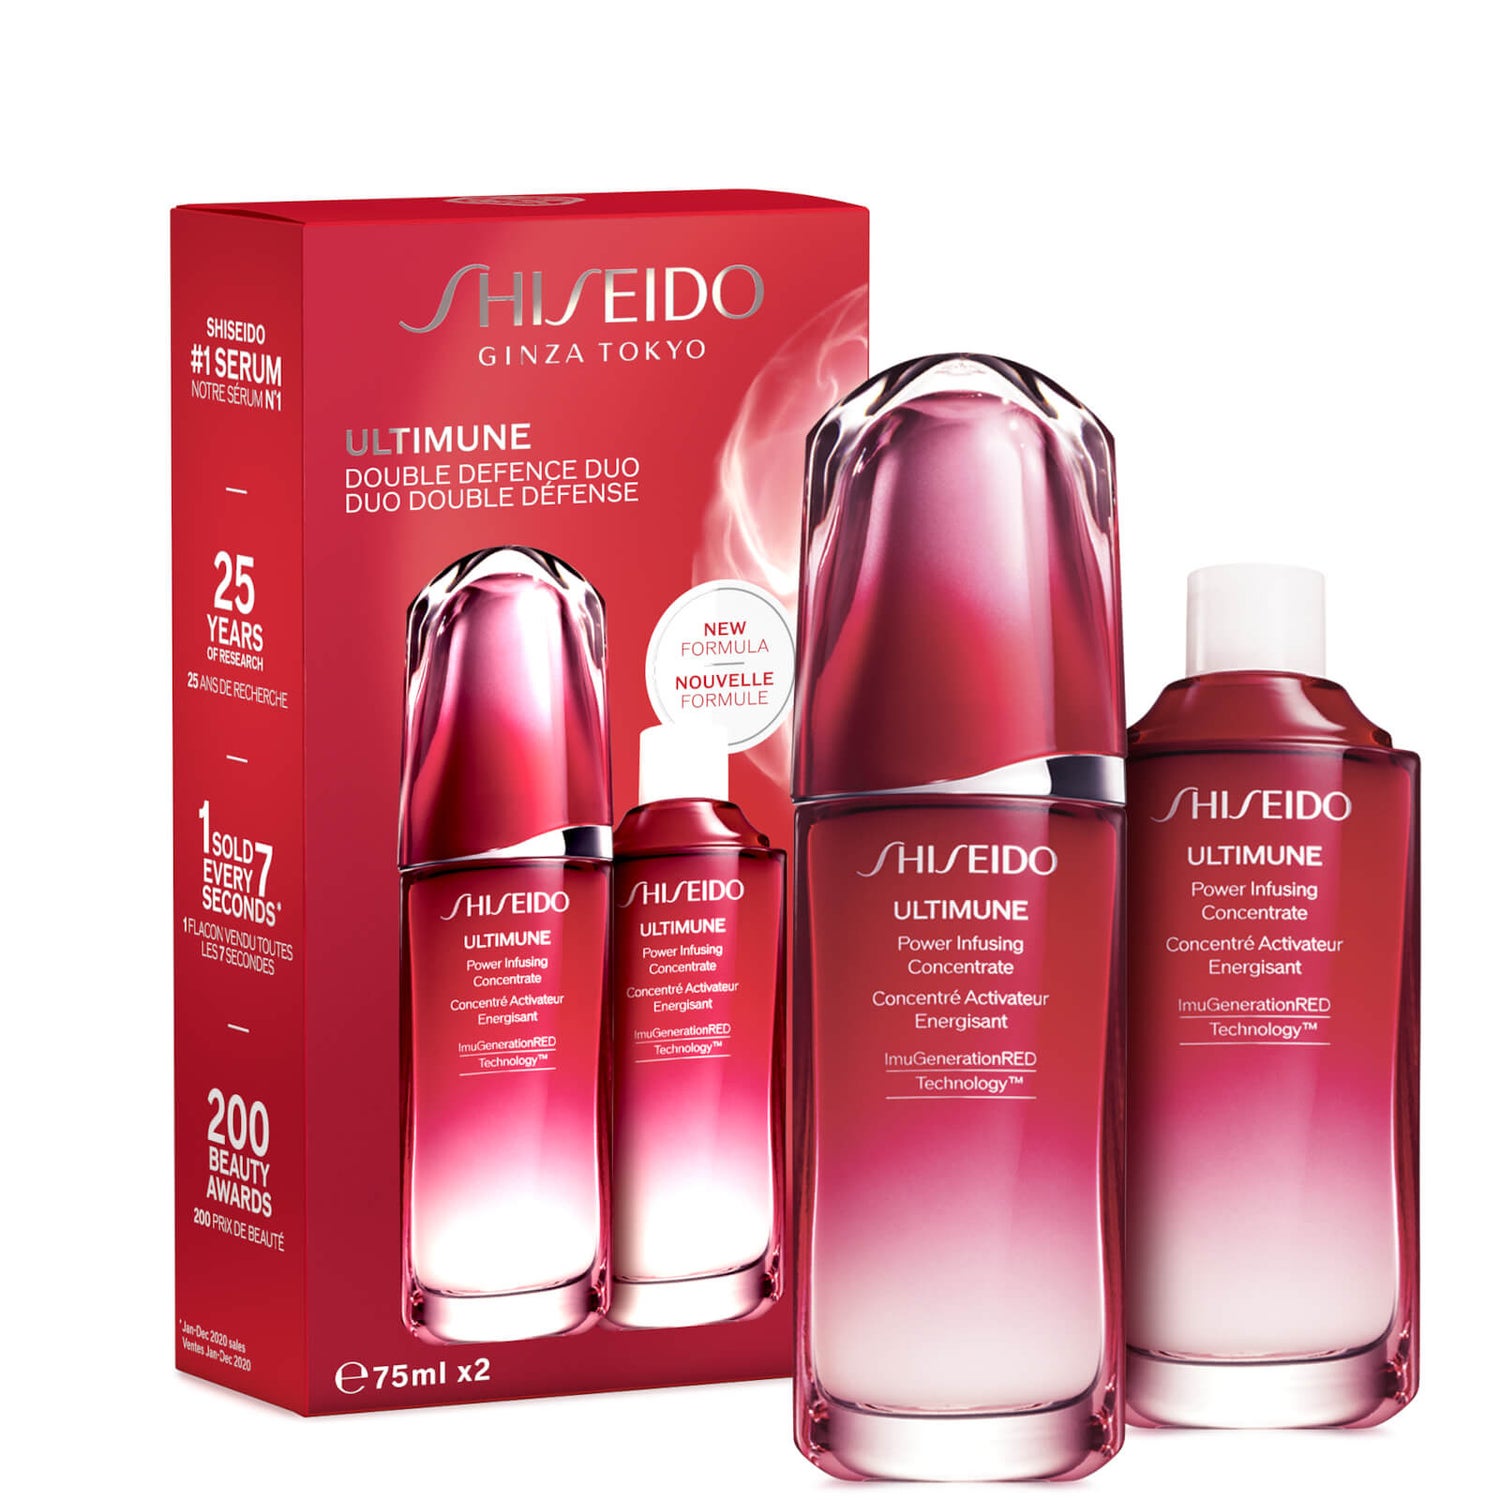 Shiseido Ultimune 75ml Set valoric de reumplere (în valoare de £200.00)